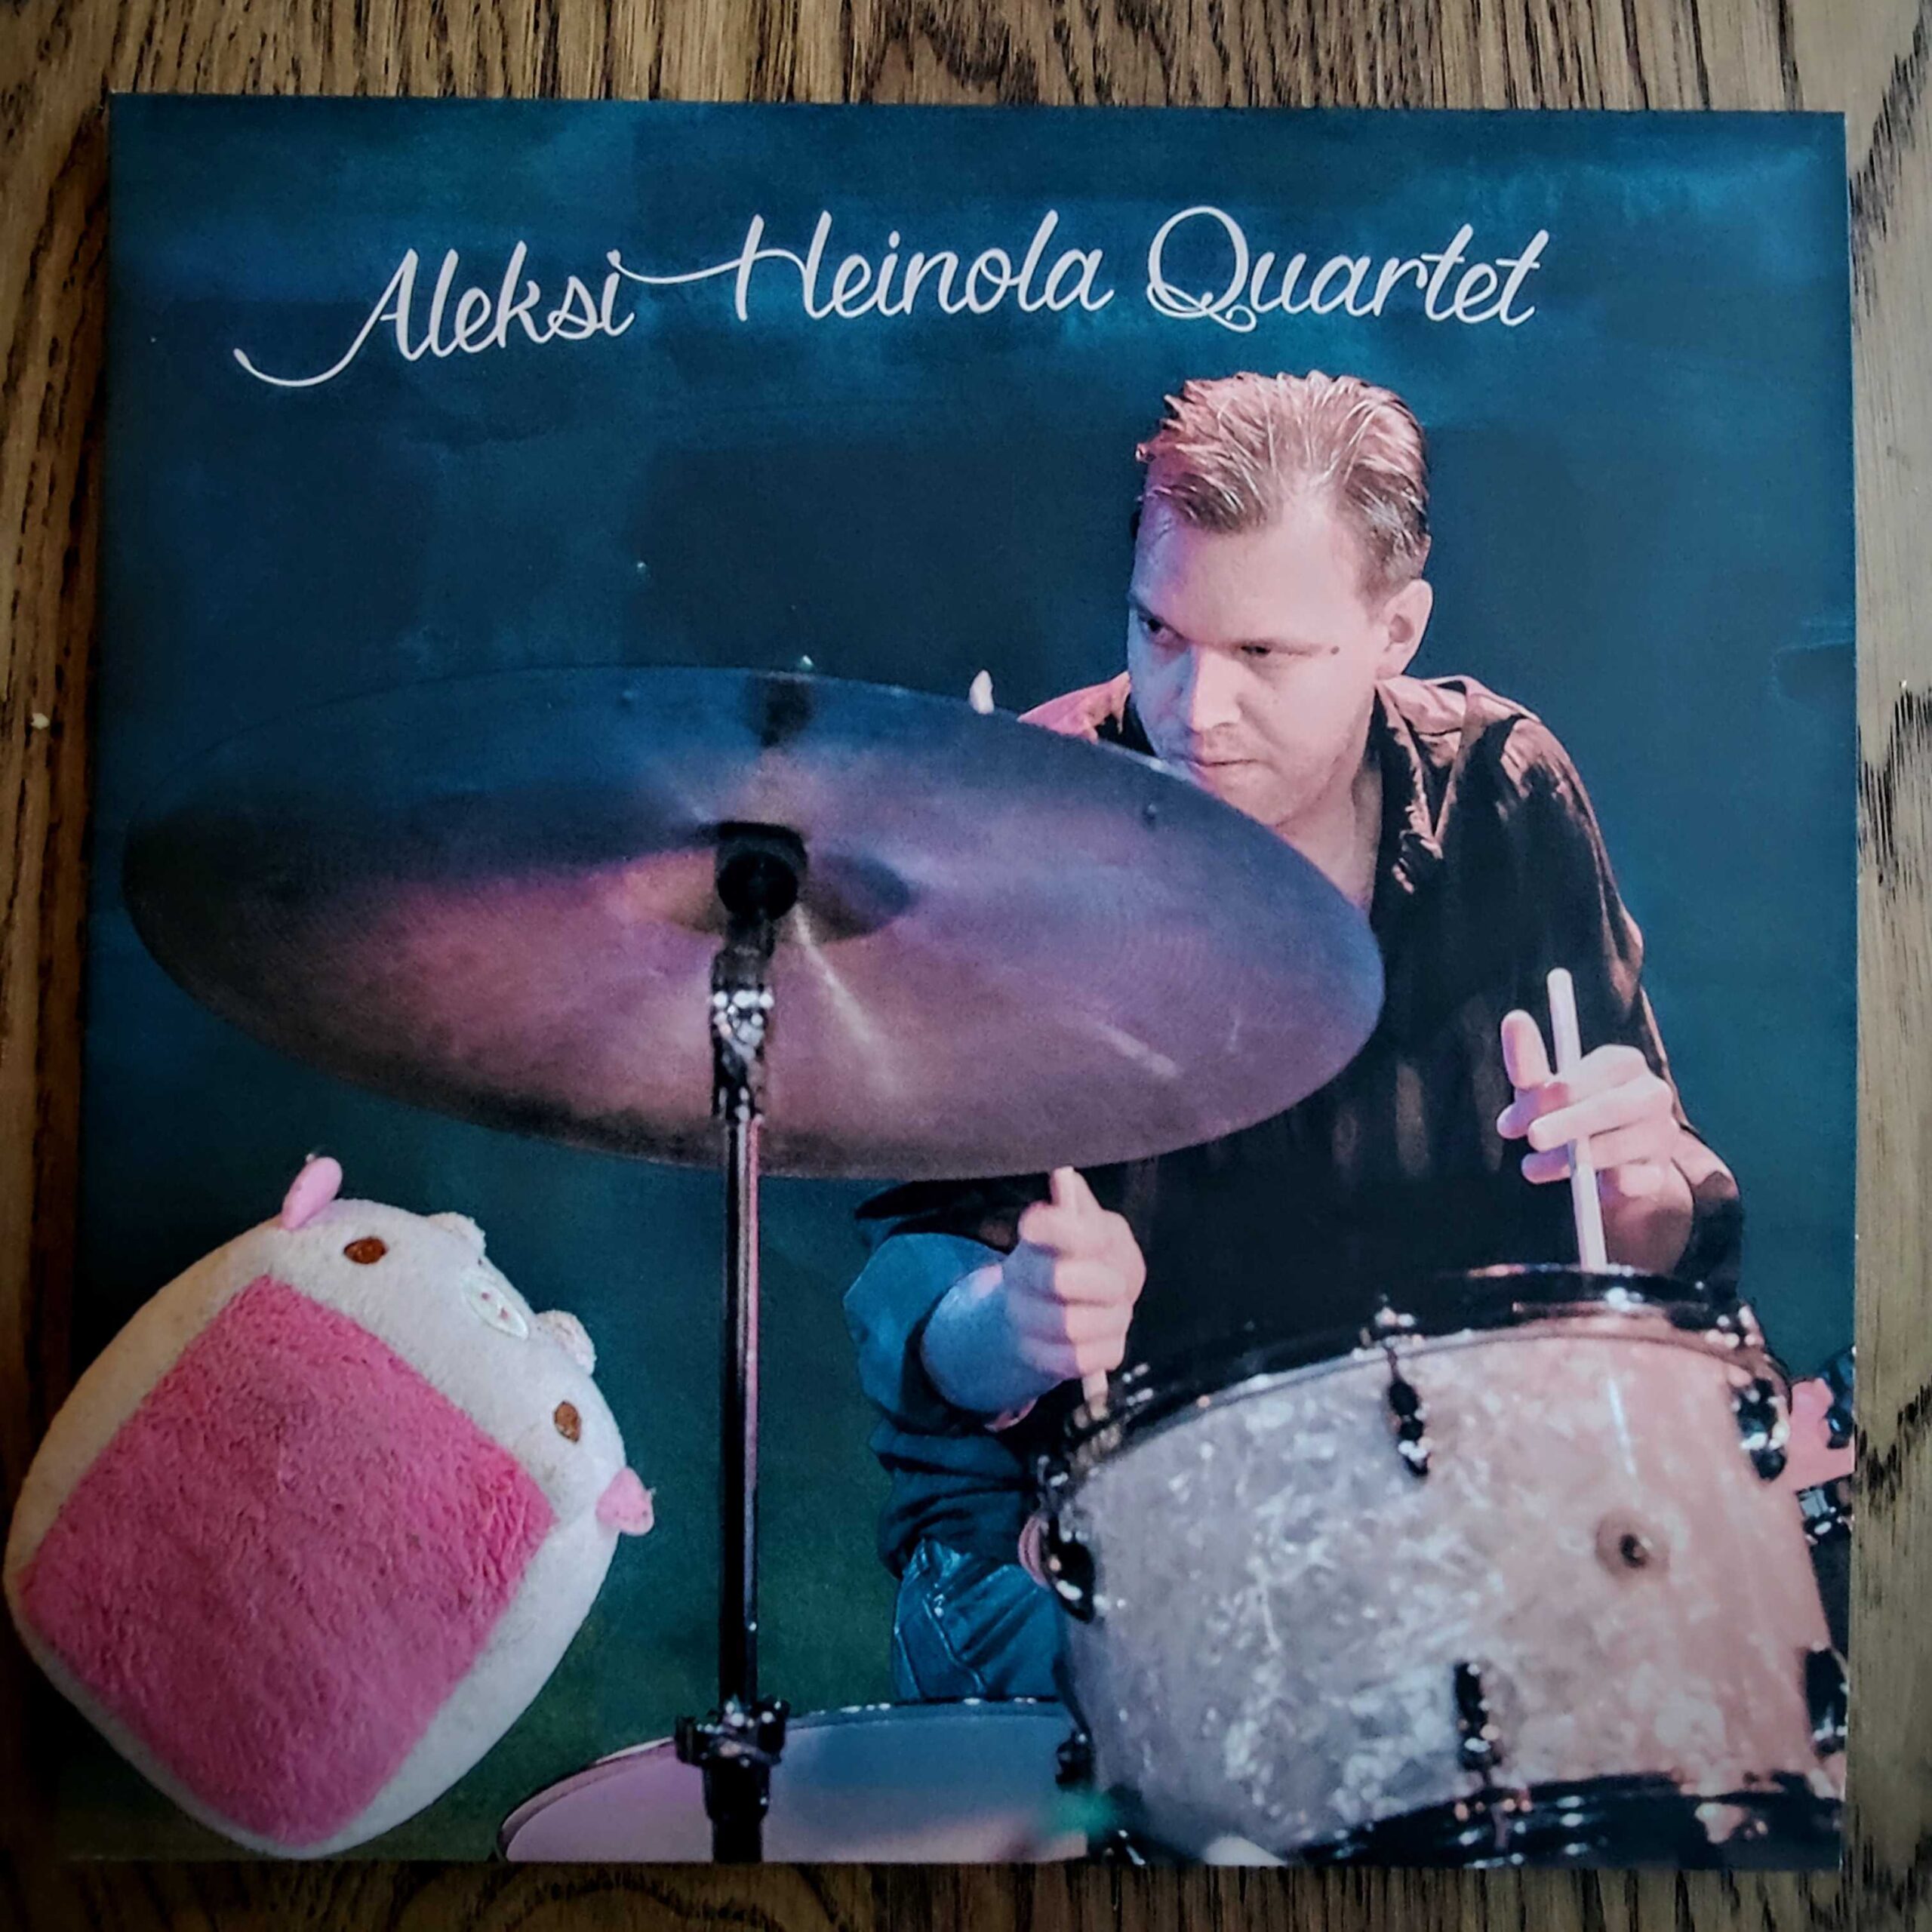 Aleksi Heinola Quartet – Aleksi Heinola Quartet